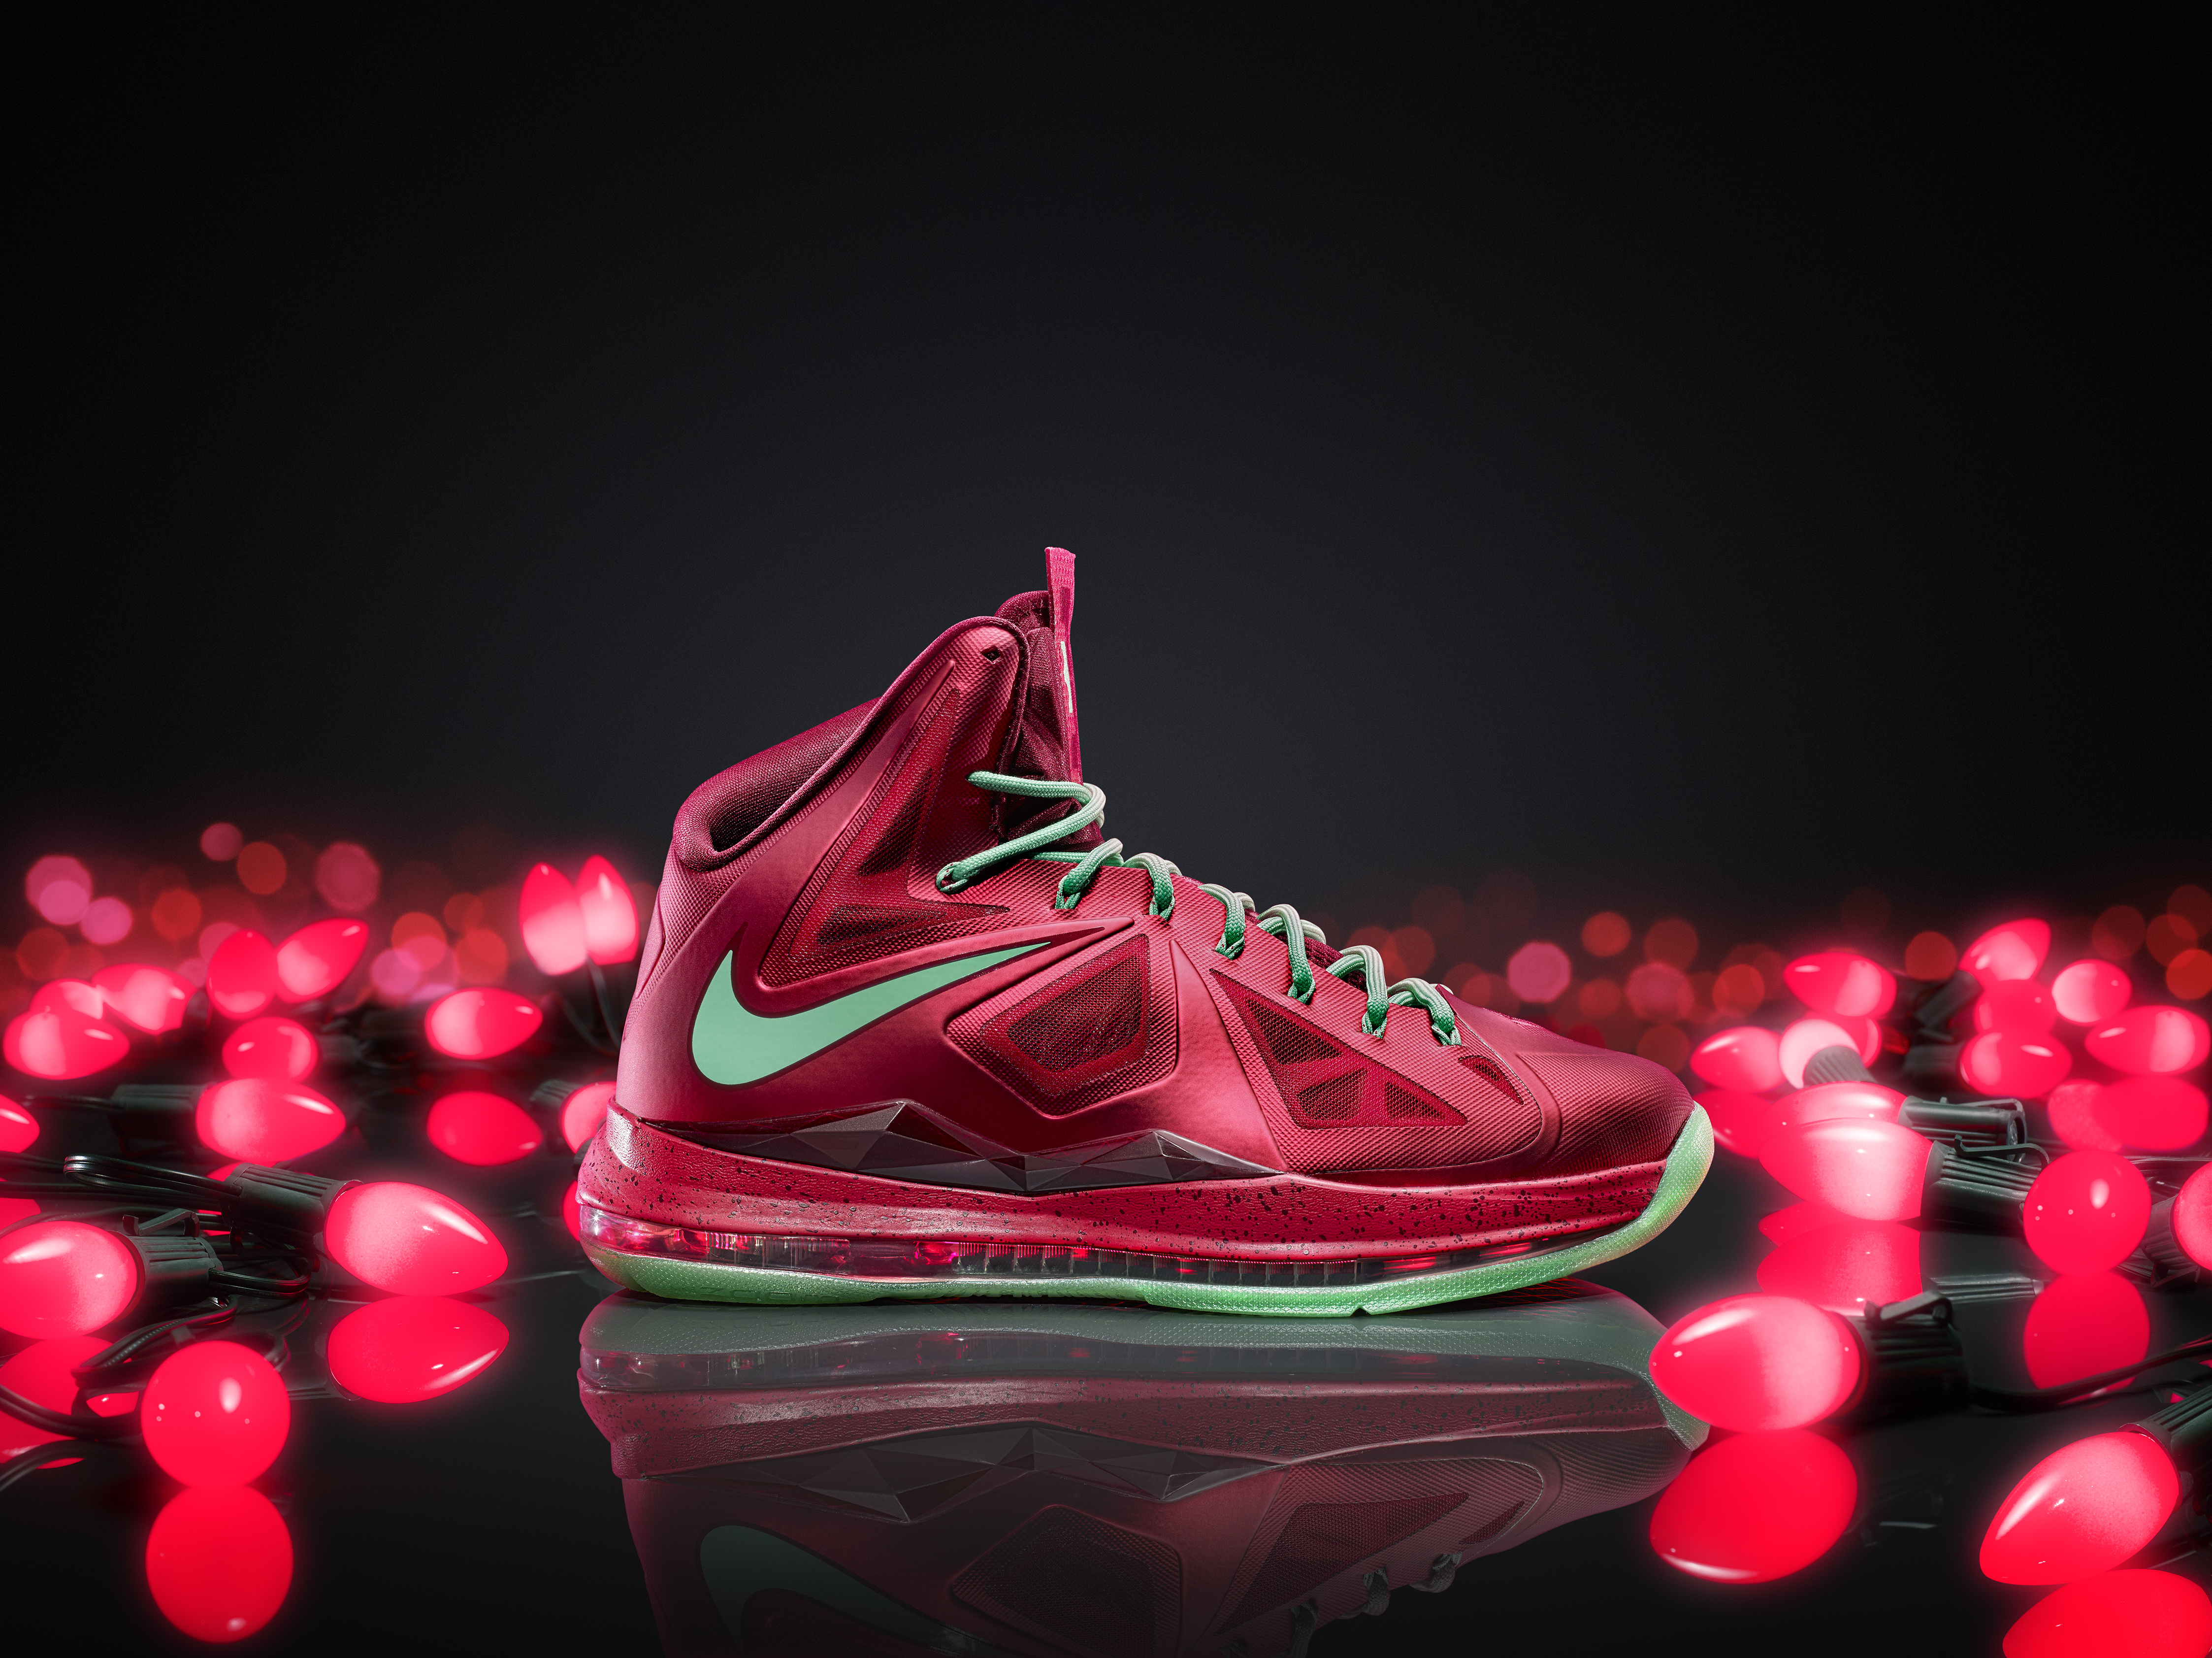 Zich voorstellen Gemaakt om te onthouden Sui Nike Unveils New Christmas Colorways of Three Signature Shoes –  SportsLogos.Net News